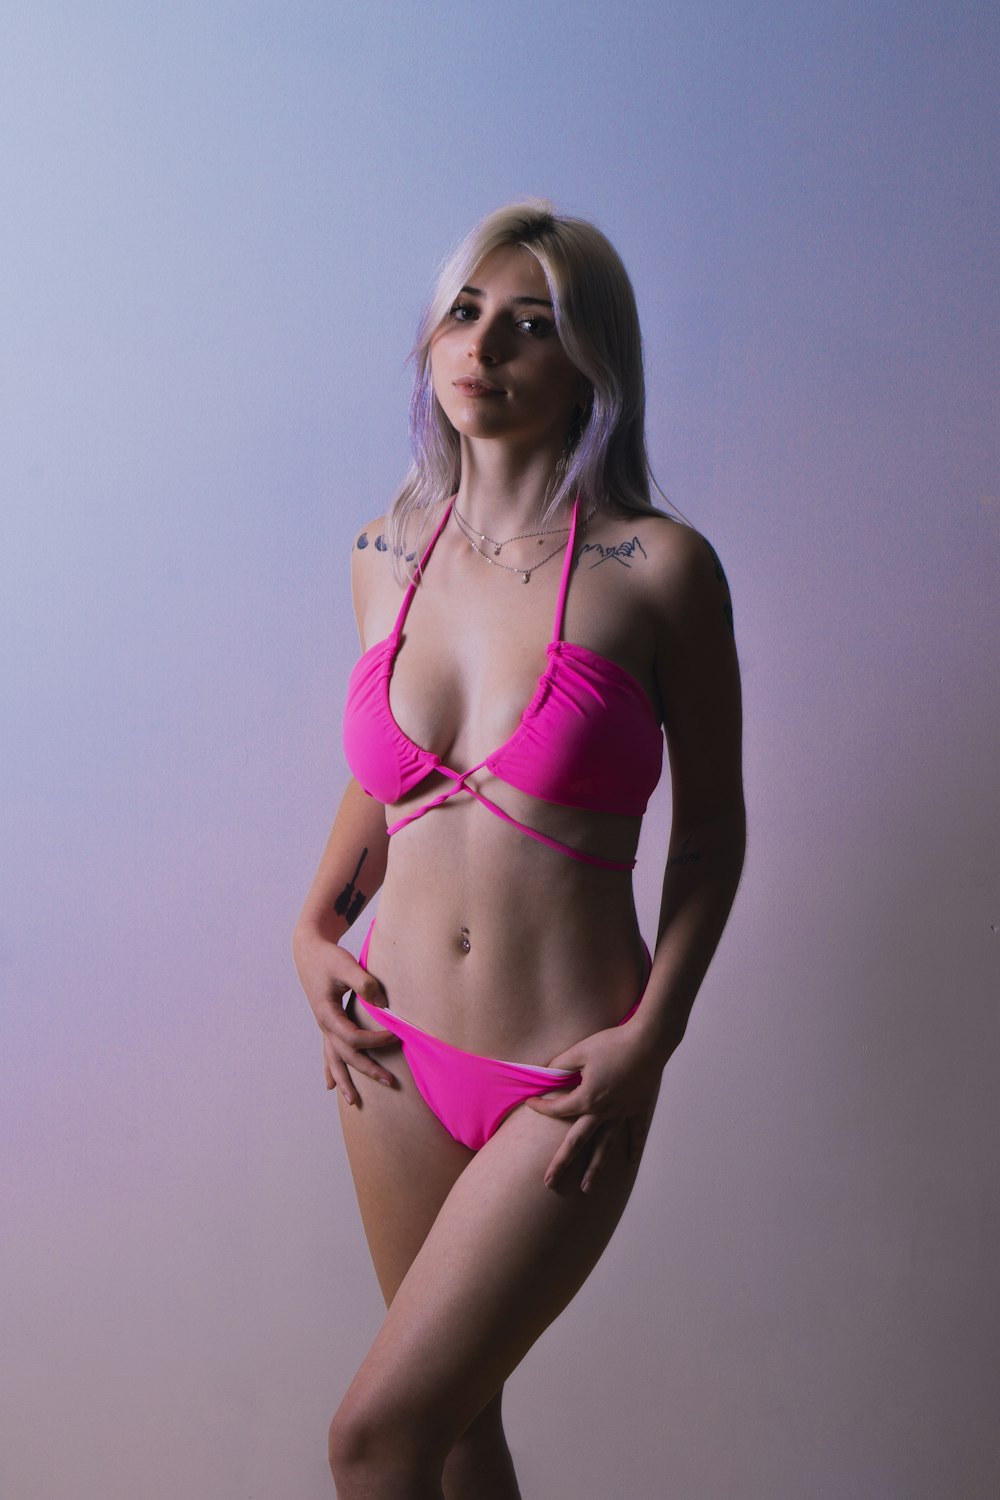 Más de 550 fotos de chicas en bikini | Descargar imágenes gratis en Unsplash